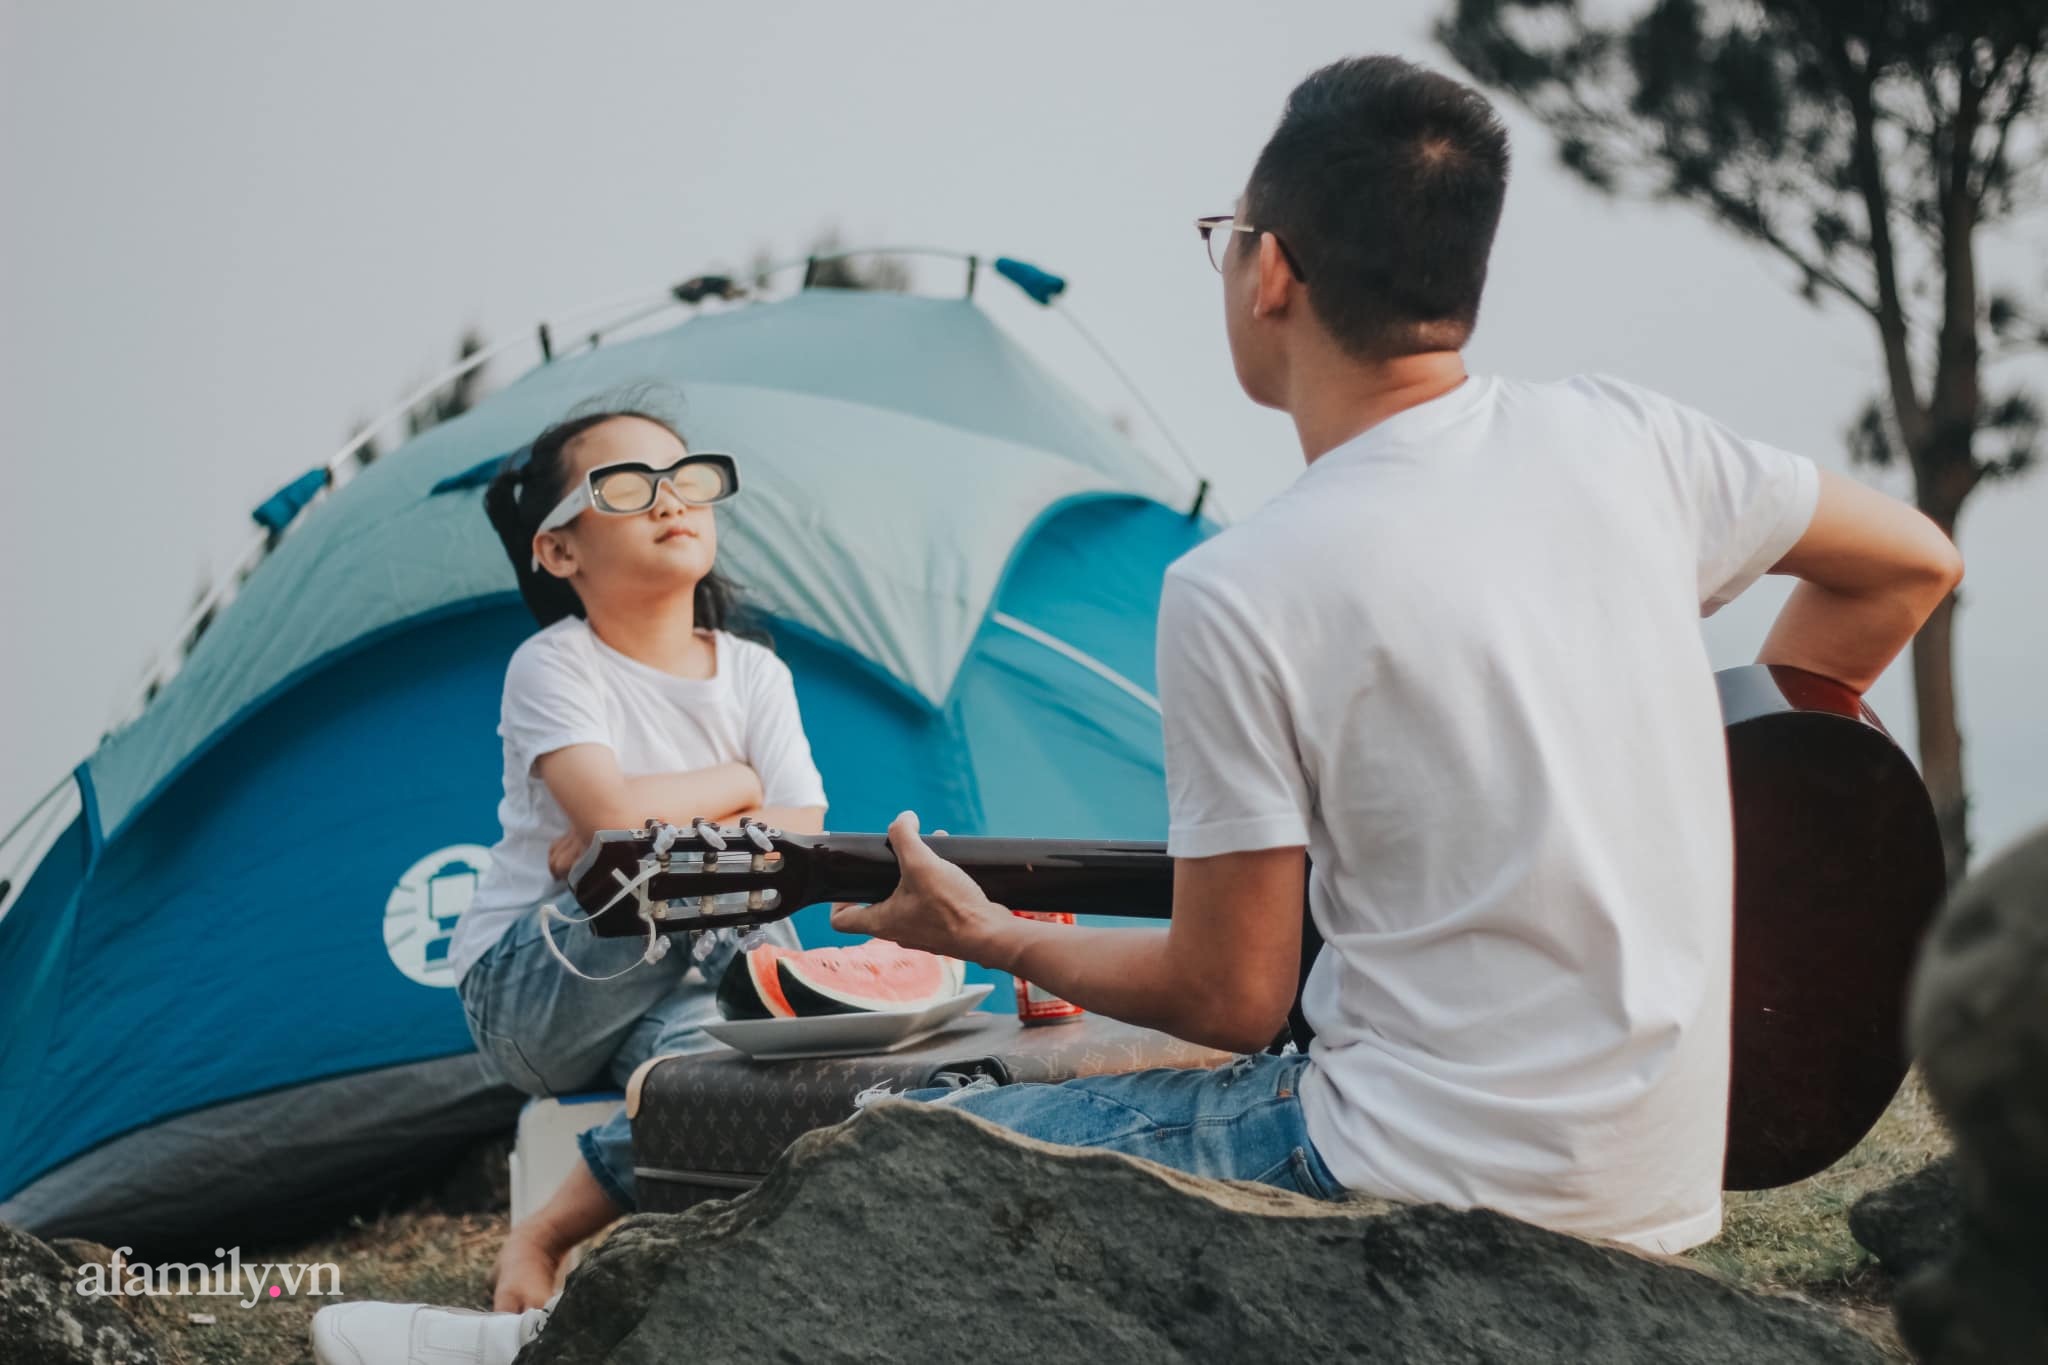 1001 trải nghiệm thực của các gia đình đã đi camping: Tiết lộ cách tế nhị để giải quyết nhu cầu cá nhân và mục đích lớn lao hơn cả việc được đi chơi - Ảnh 11.